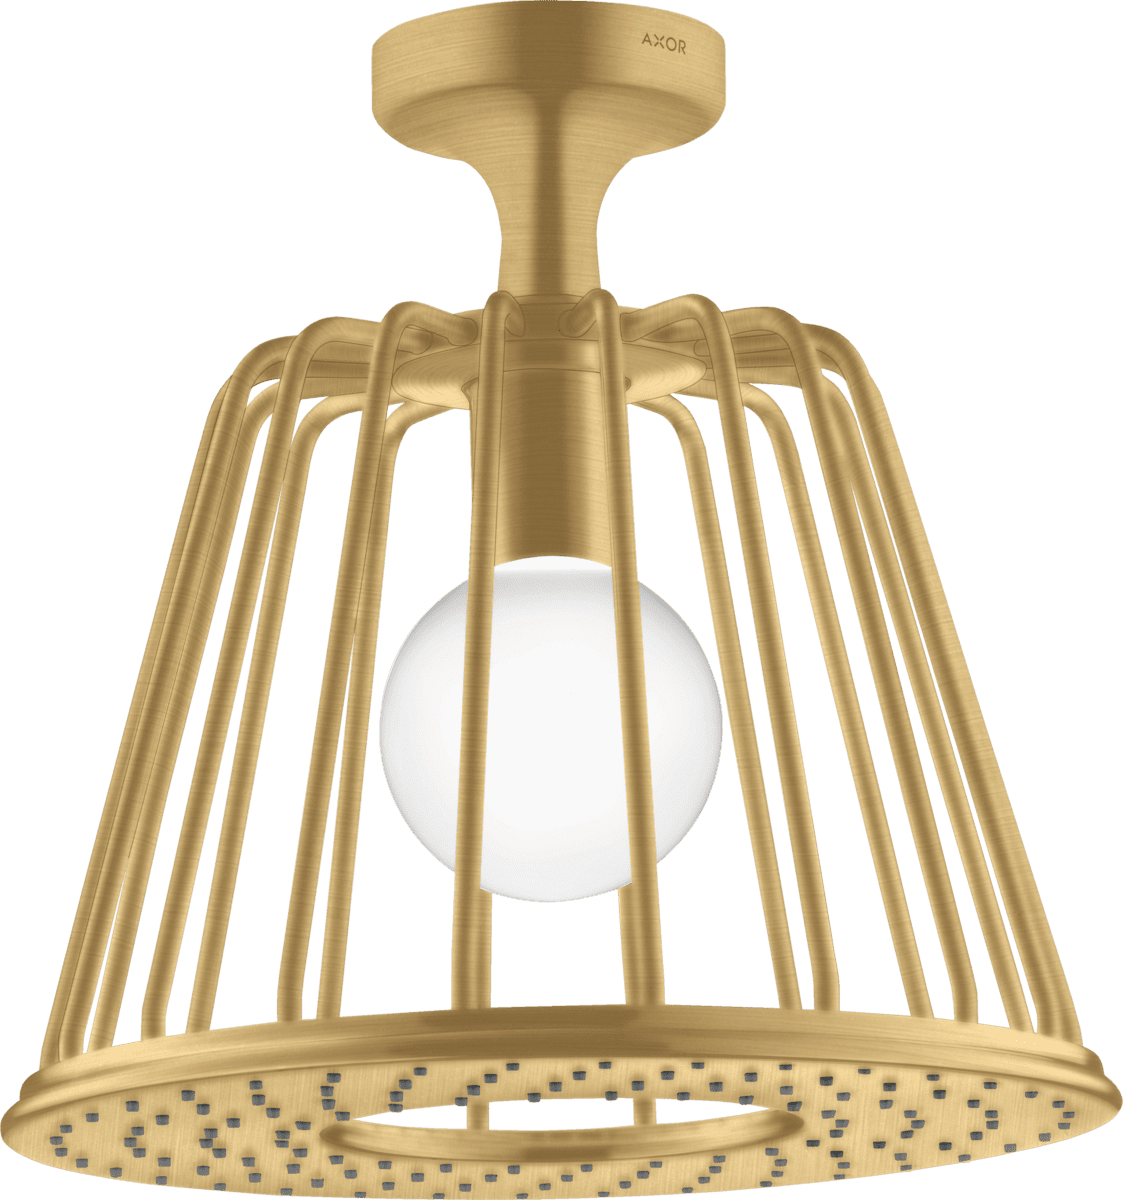 εικόνα του HANSGROHE AXOR LampShower/Nendo LampShower 275 1jet with ceiling connector #26032250 - Brushed Gold Optic